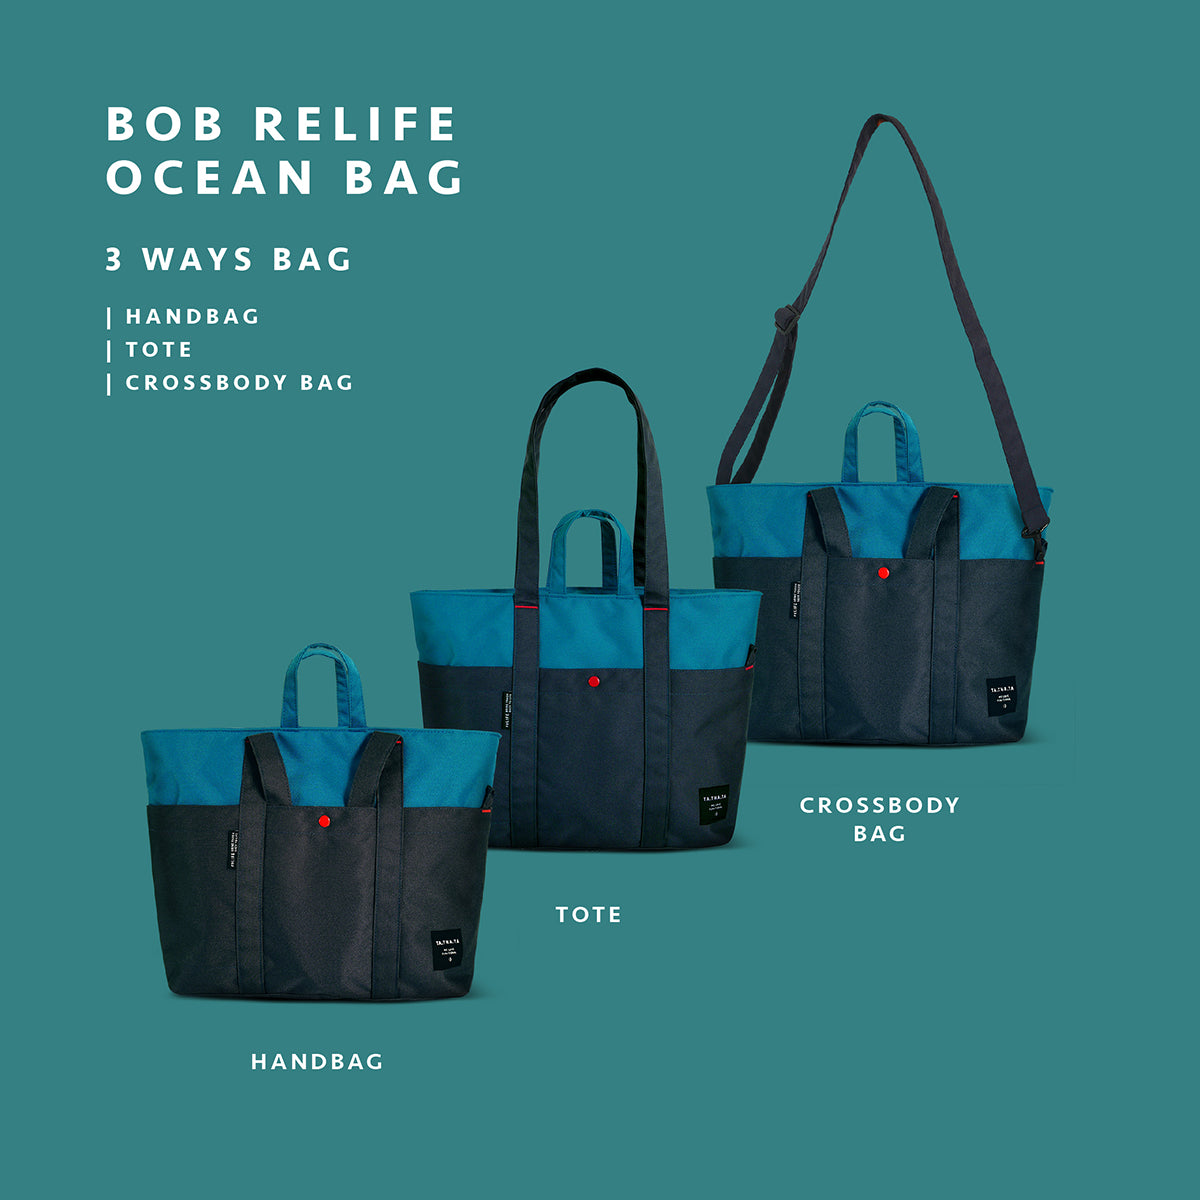 Bob relife ocean bag